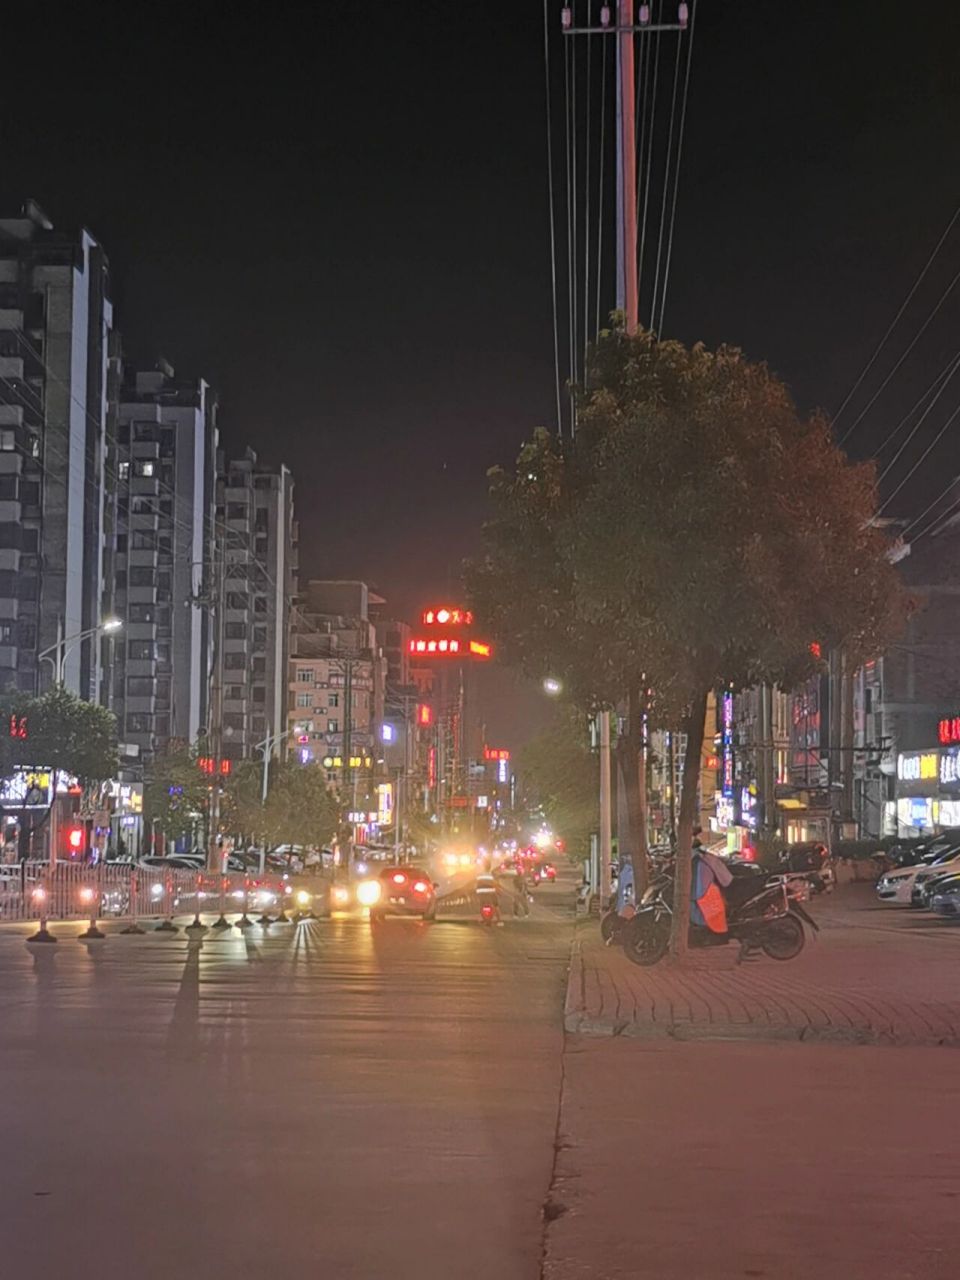 马路照片 夜景图片